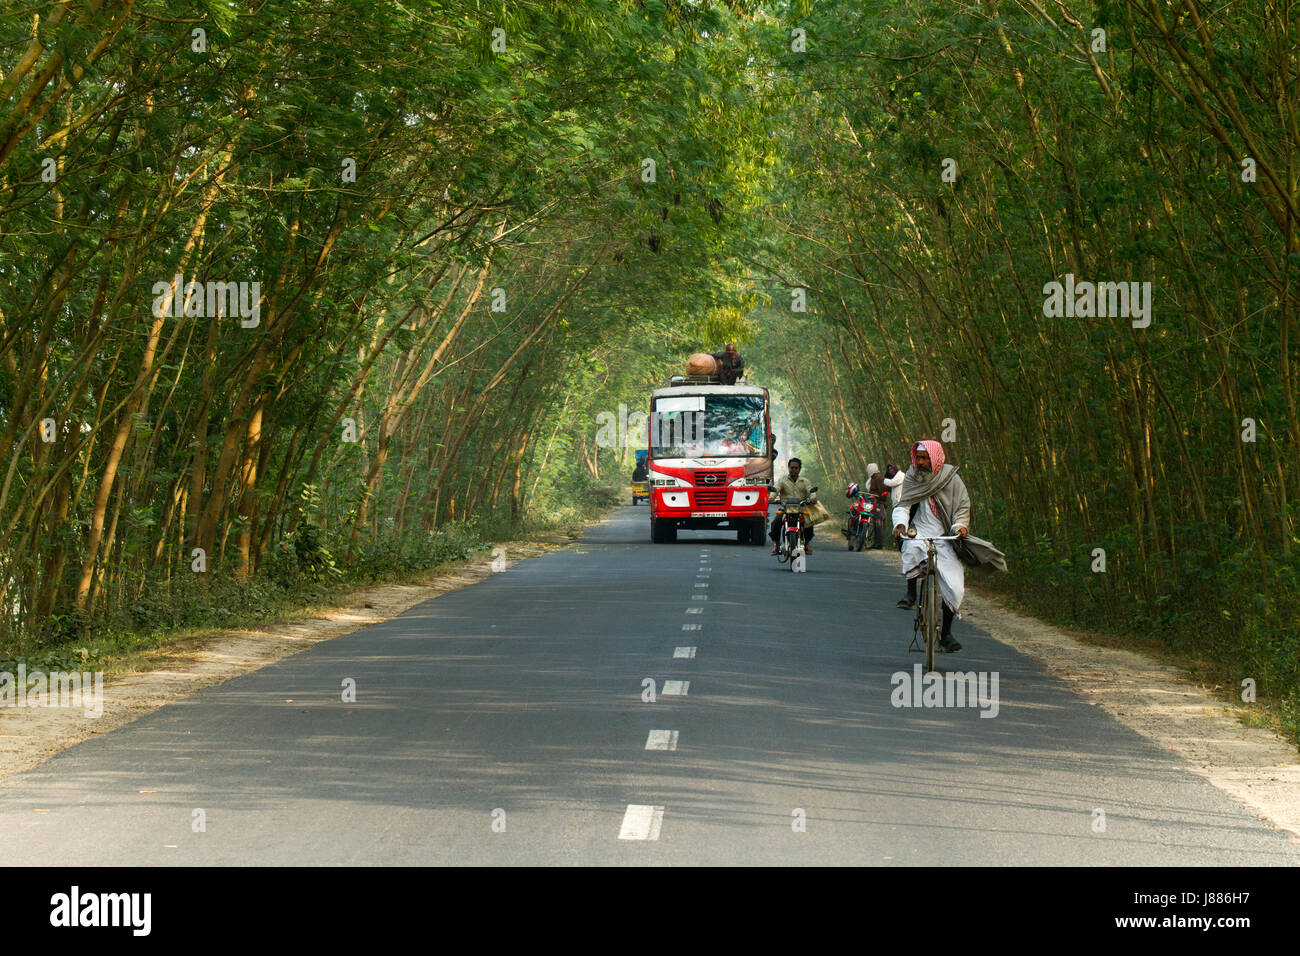 Kushtia-Meherpur highway. Meherpur, Bangladesh Stock Photo